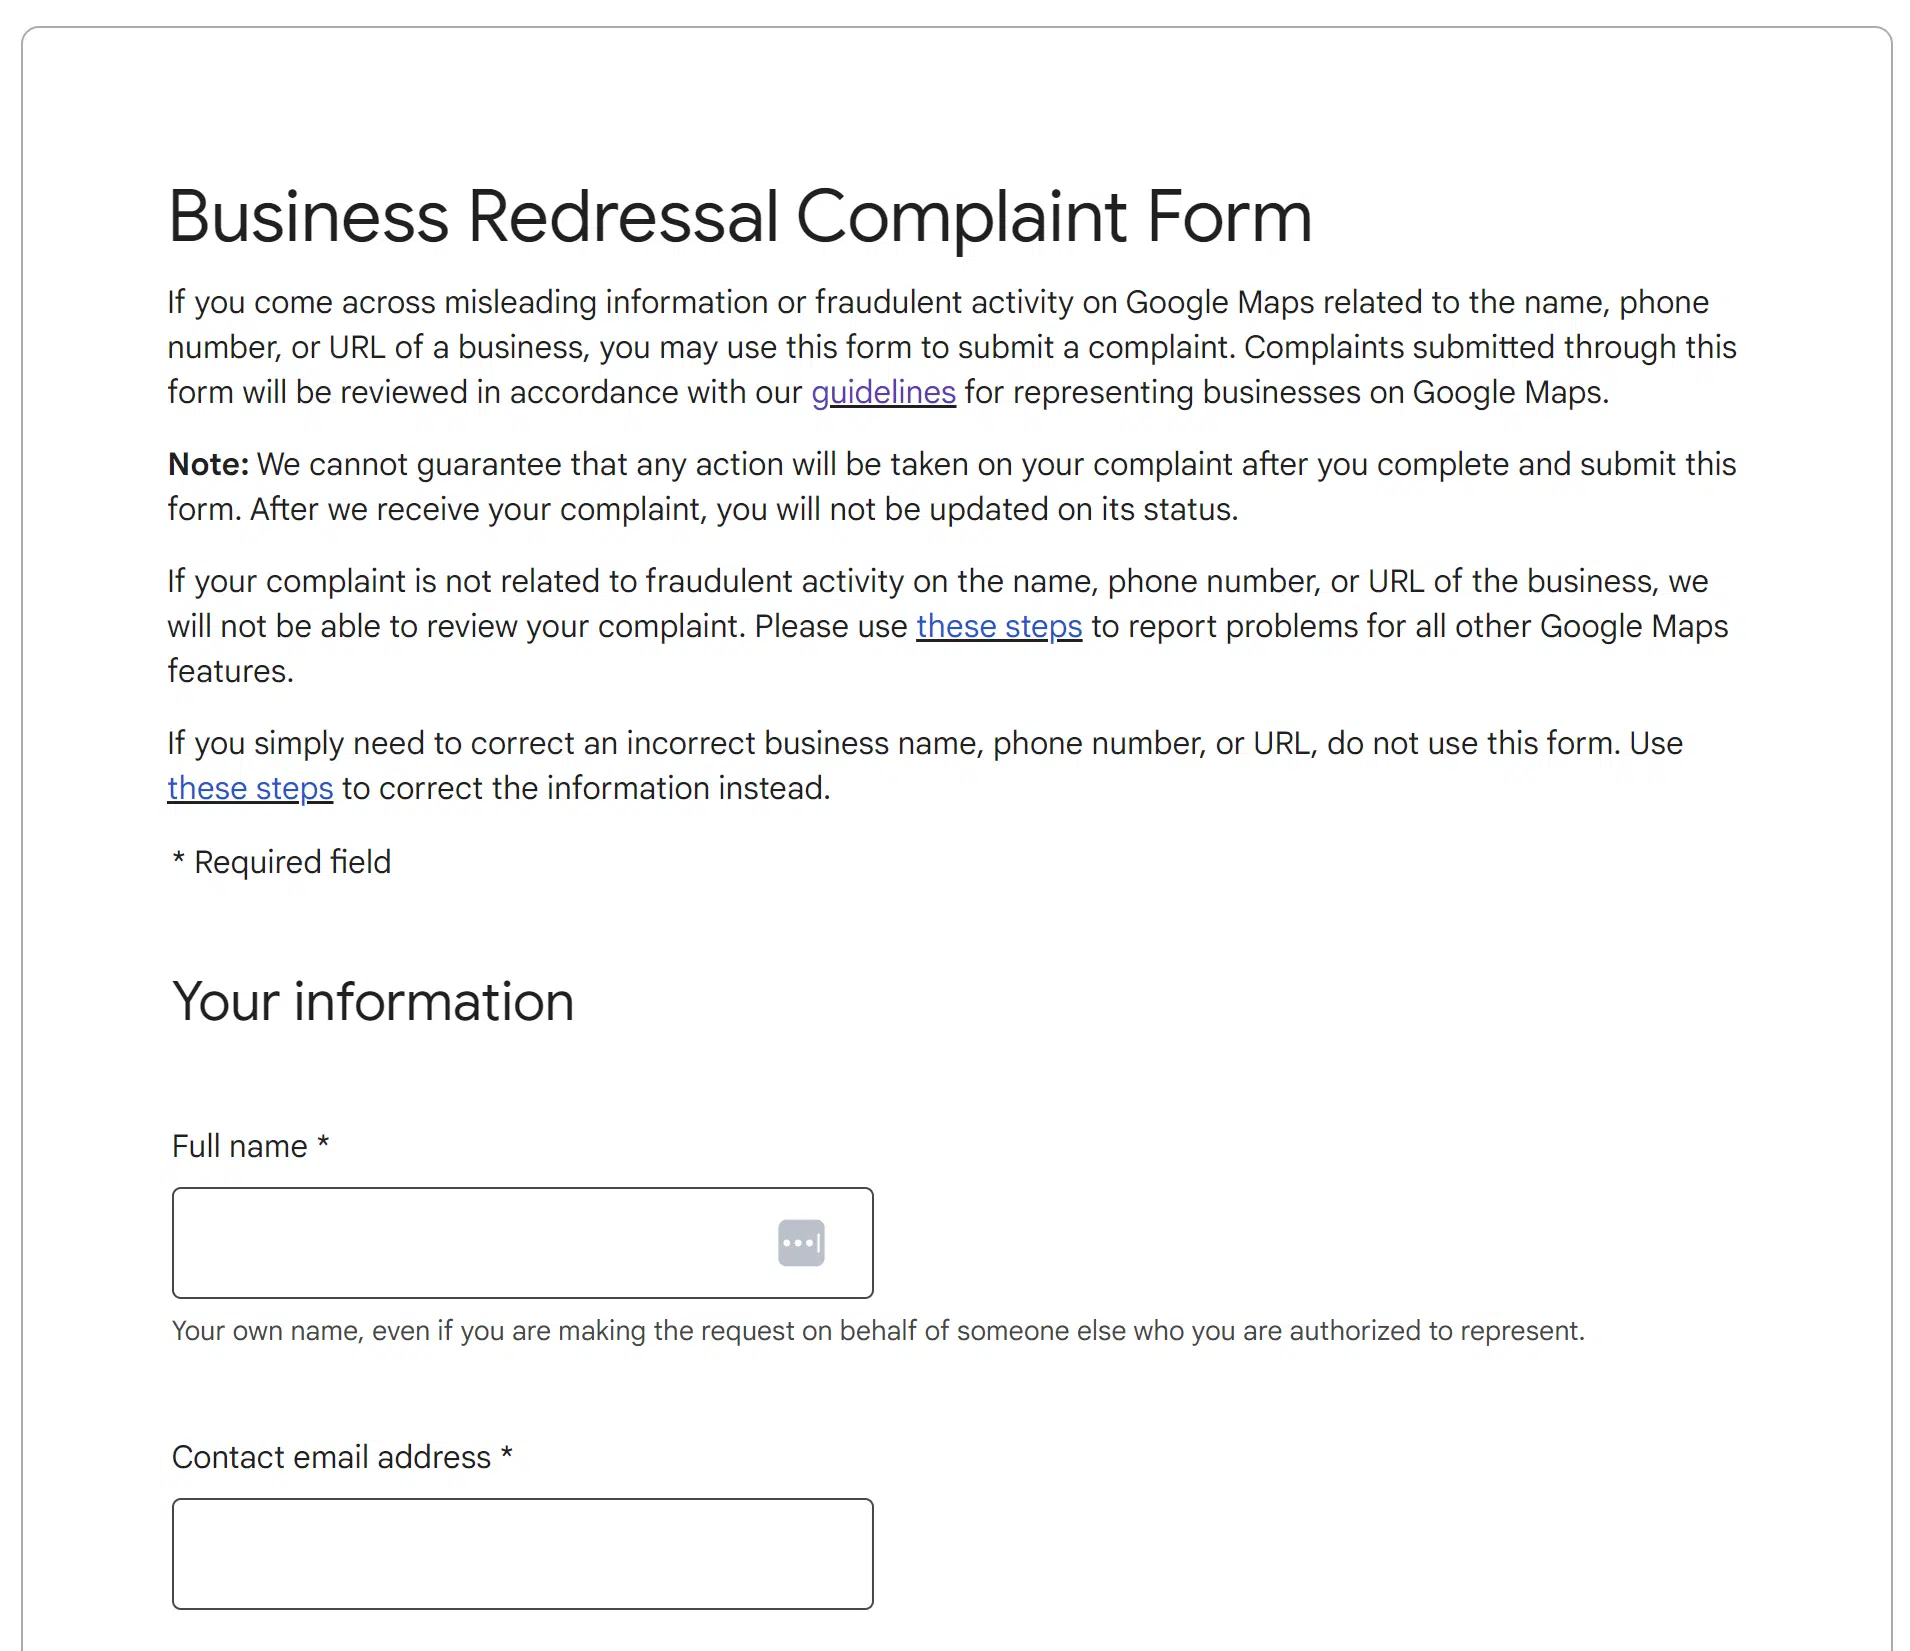 Business redressal complaint form